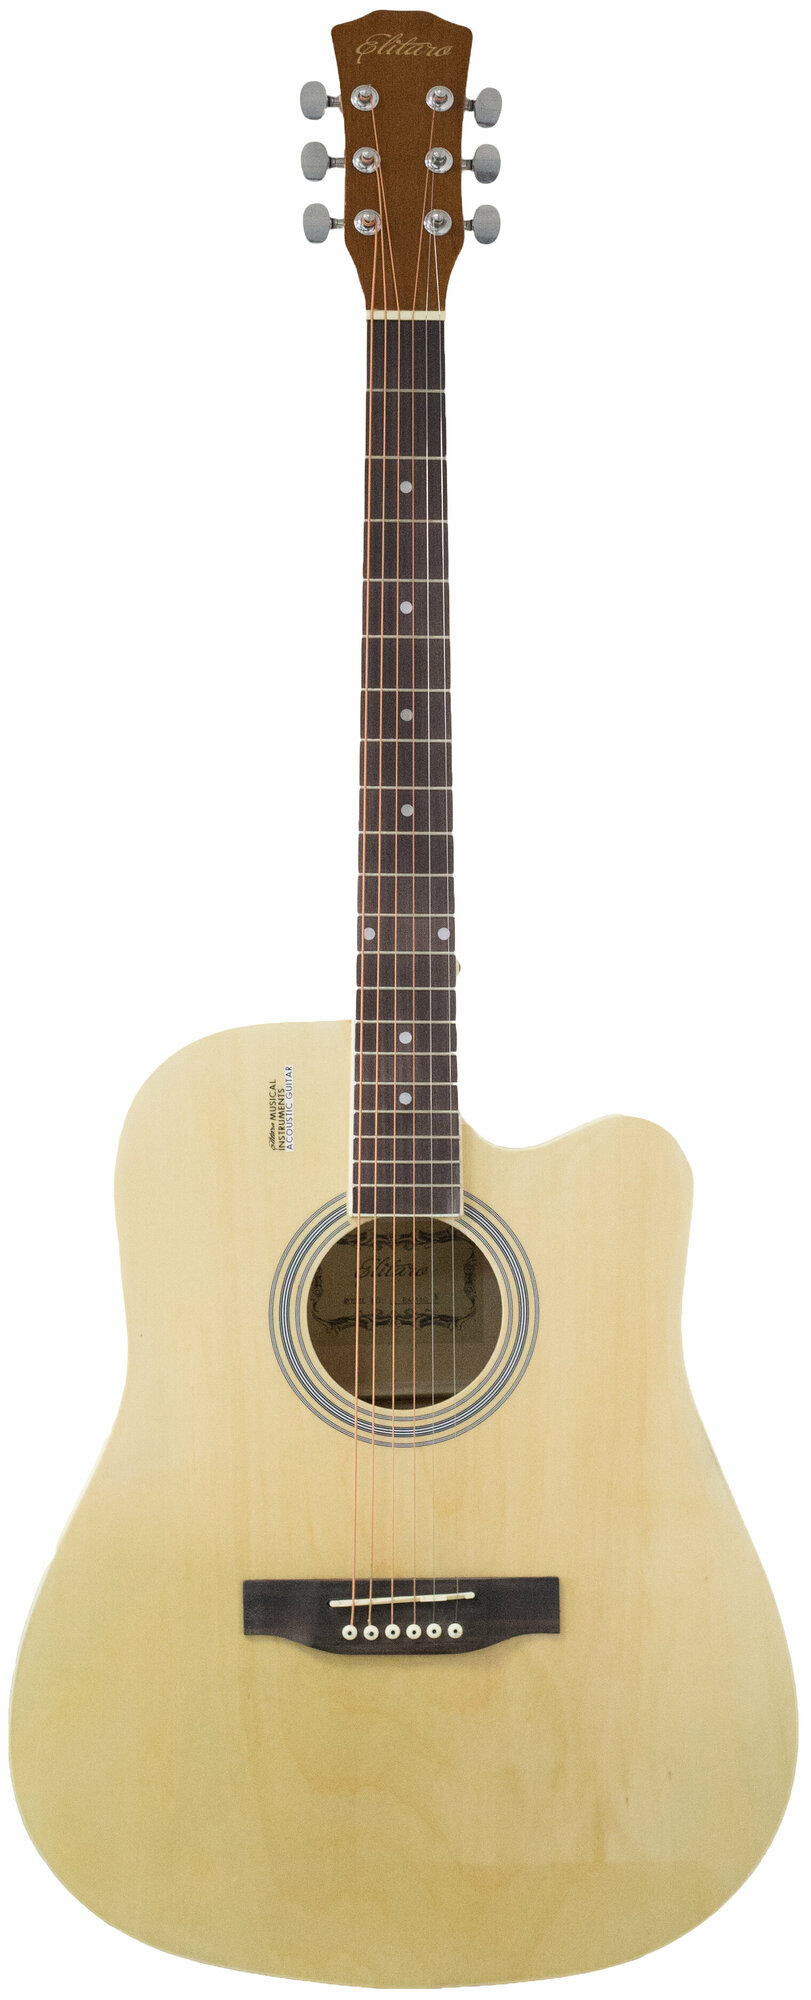 Акустическая гитара Elitaro E4110 N, 41 дюйм , глянцевая